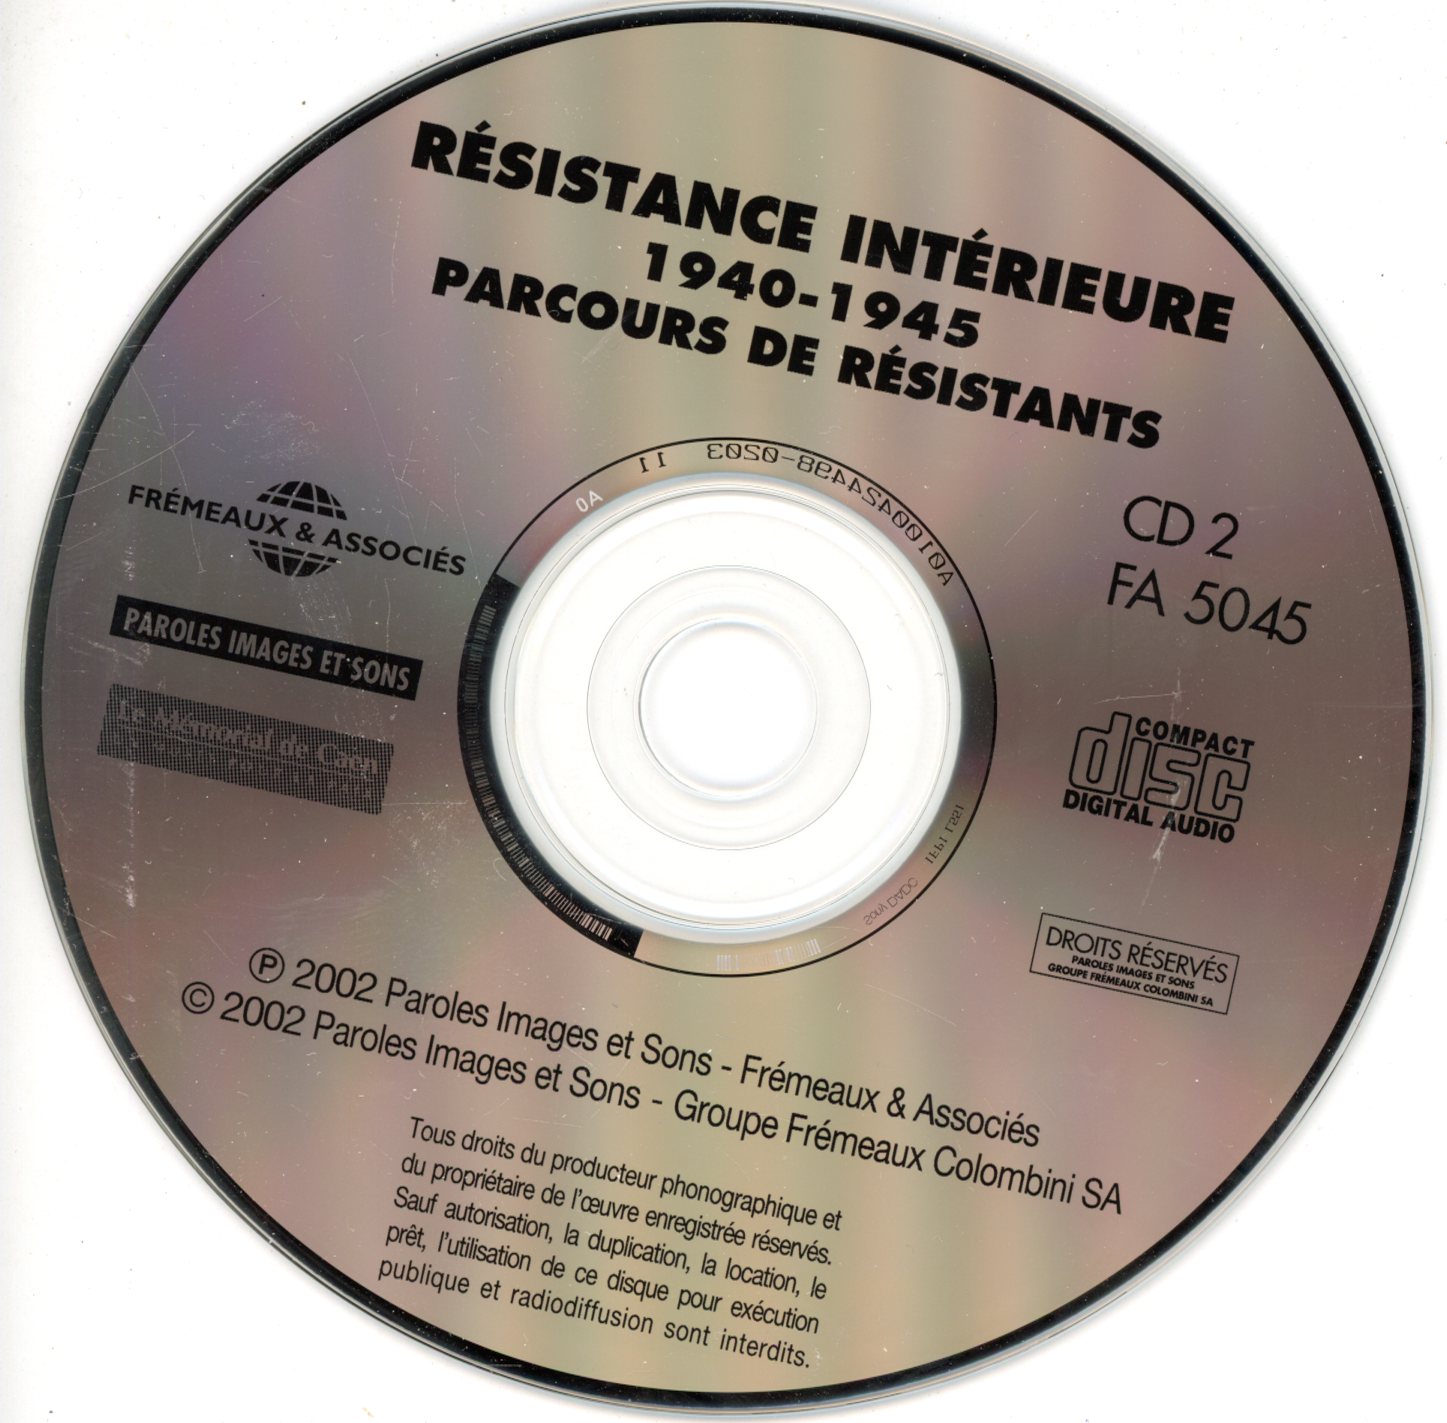 CD-AUDIO-RESISTANCE INTERIEURE 1940-1945-LEMASTERBROCKERS